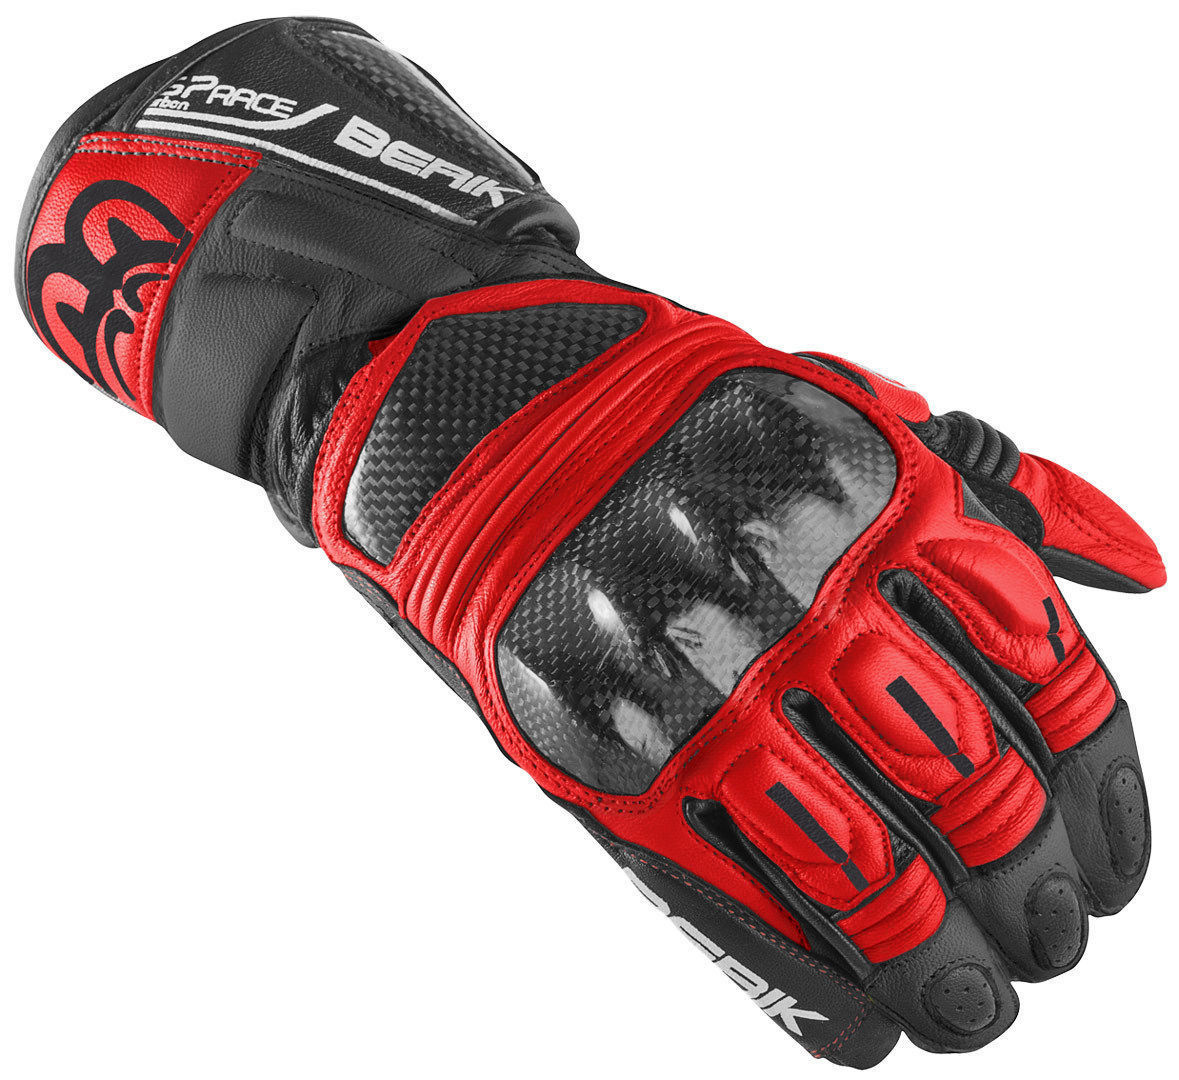 Мотоциклетные перчатки Berik Namib Pro с усиленной боковиной, черный/красный мотоциклетные перчатки namib pro berik черный красный